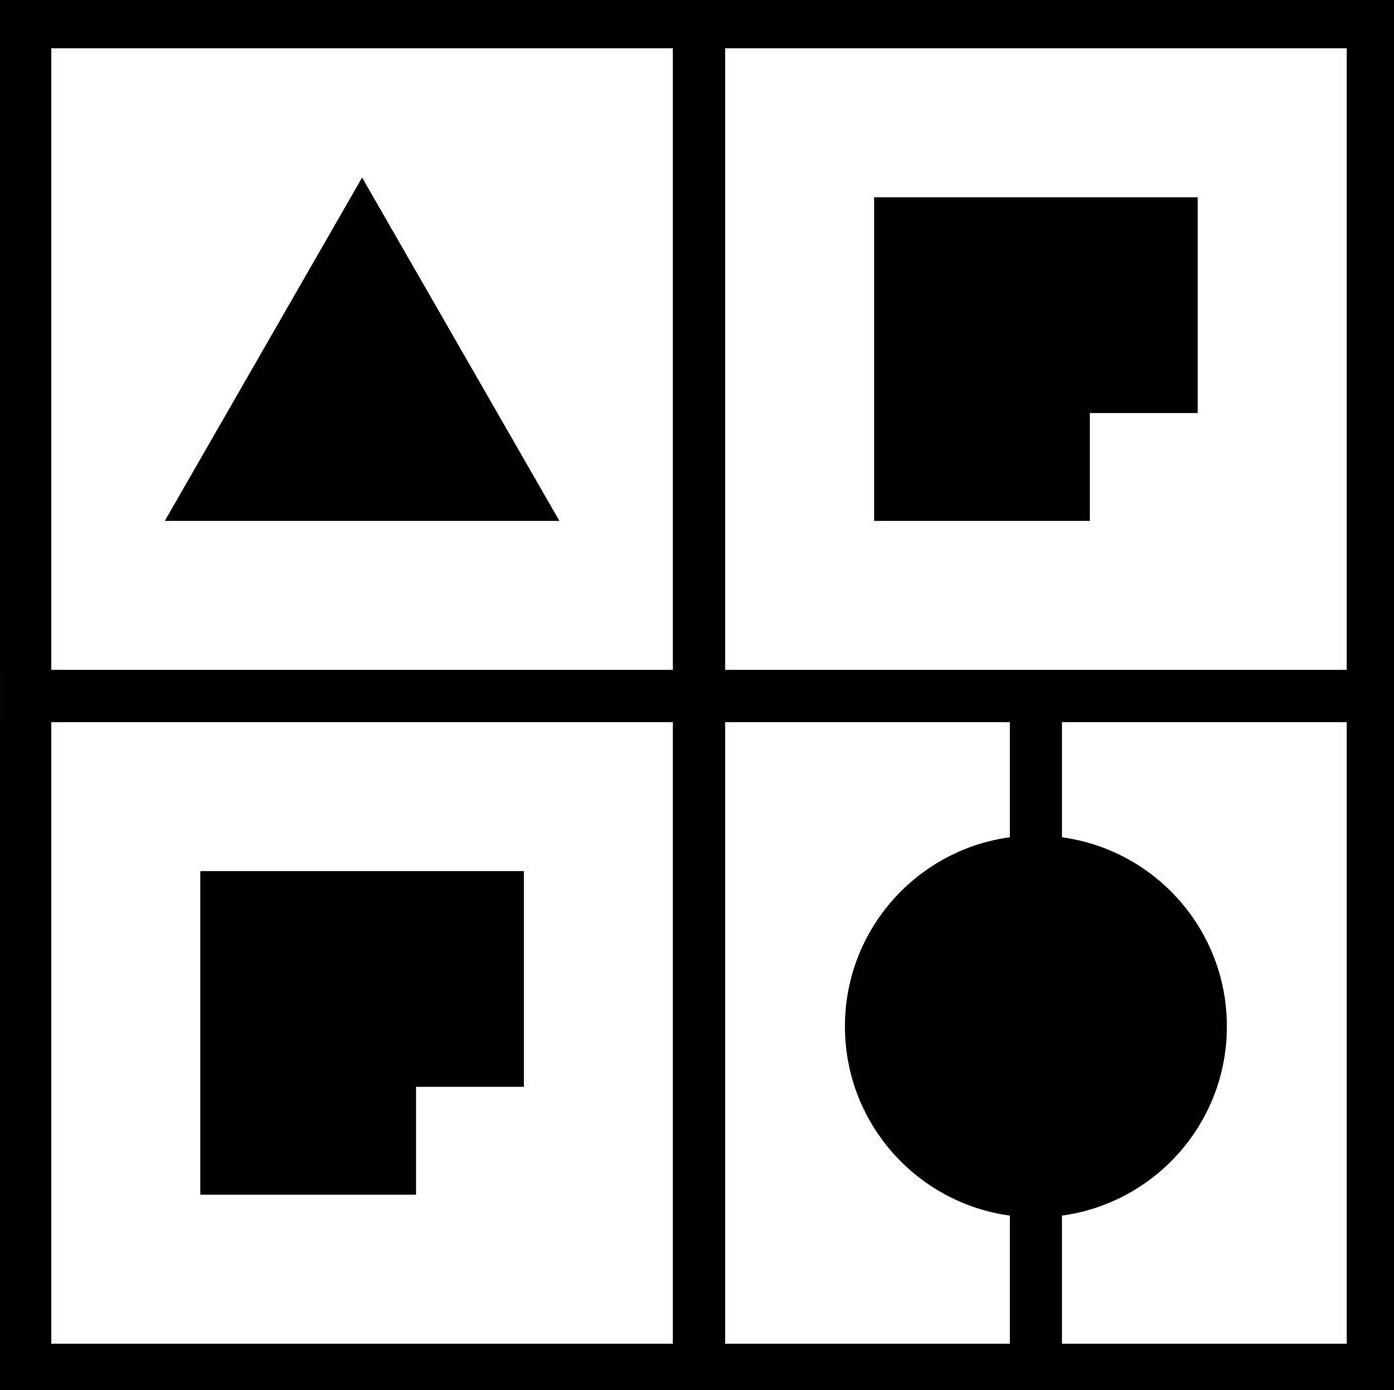 Arhitektonsko-građevinsko-geodetski fakultet logo